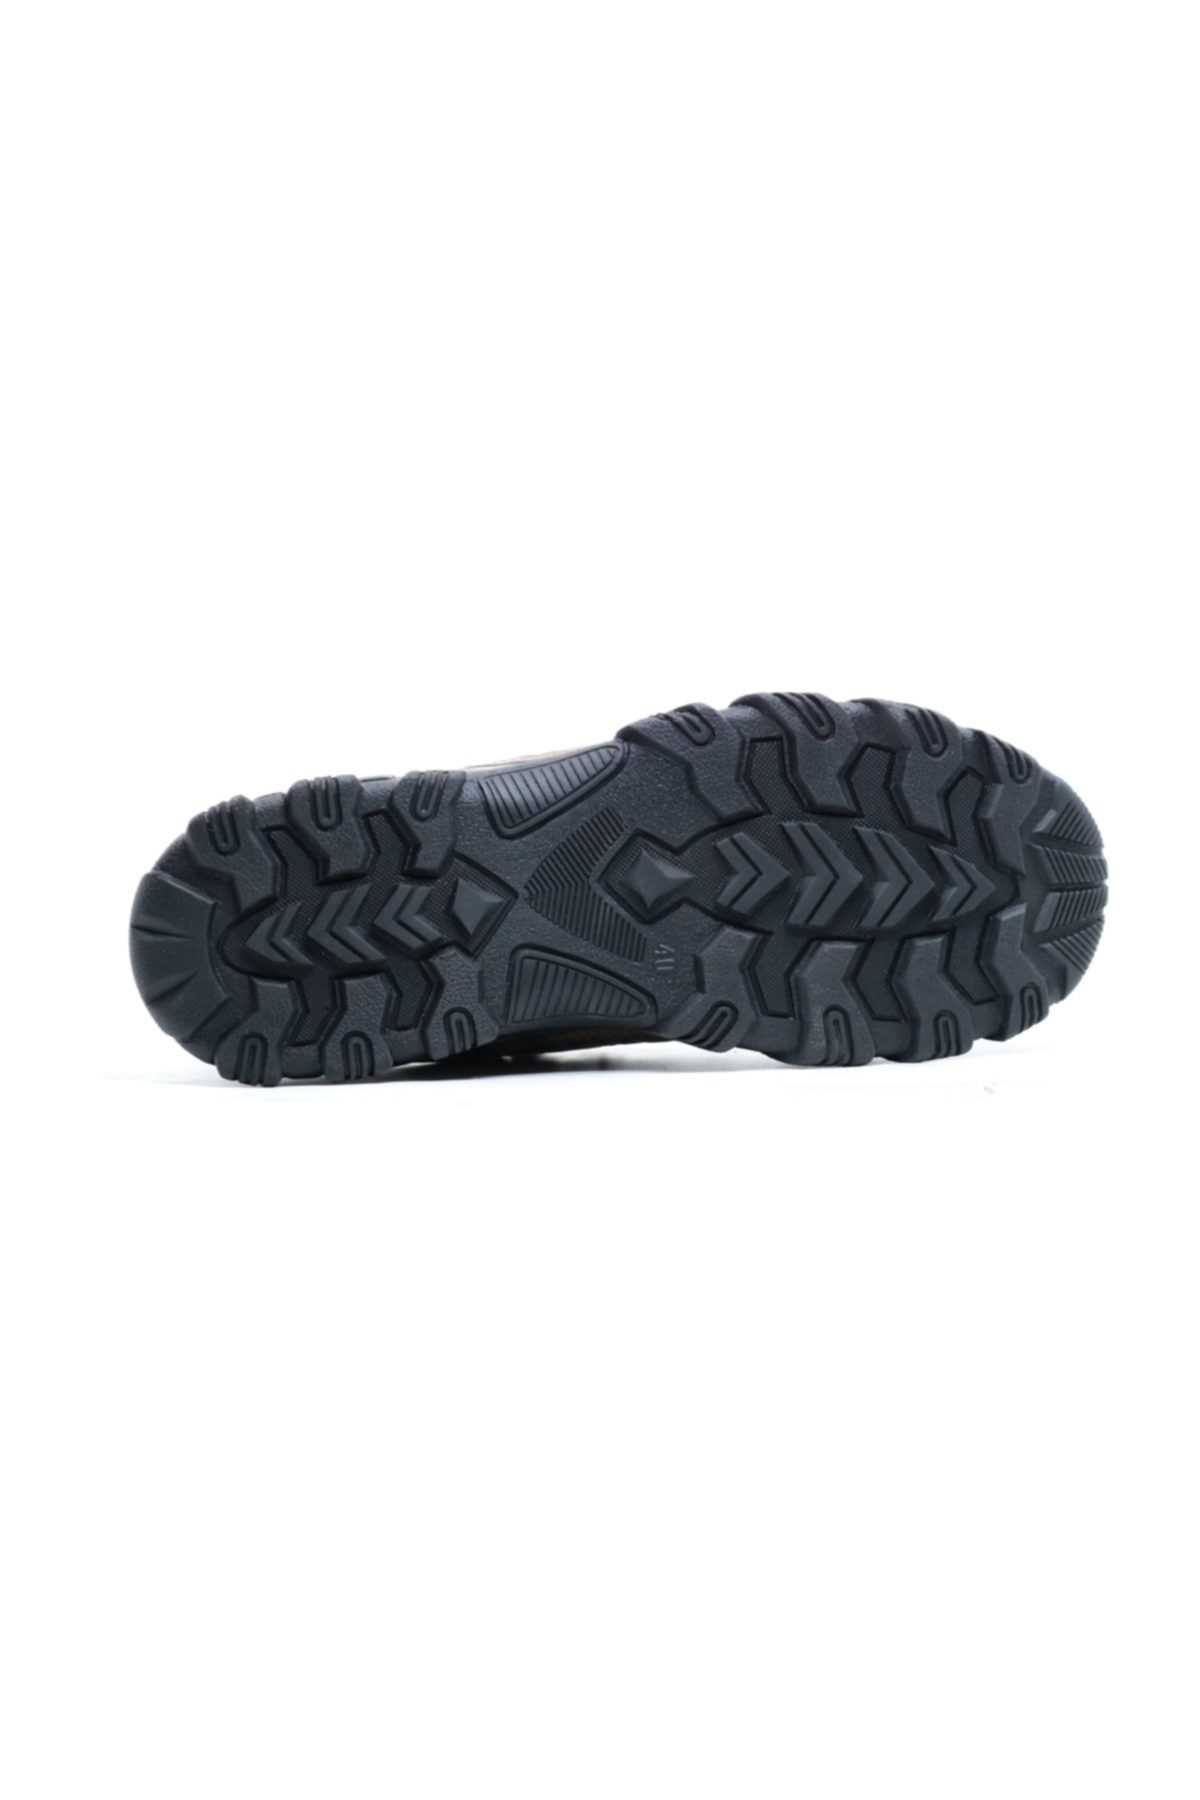 خرید انلاین کفش کلاسیک مردانه خاص برند Ayakkabix رنگ خاکی کد ty37995526